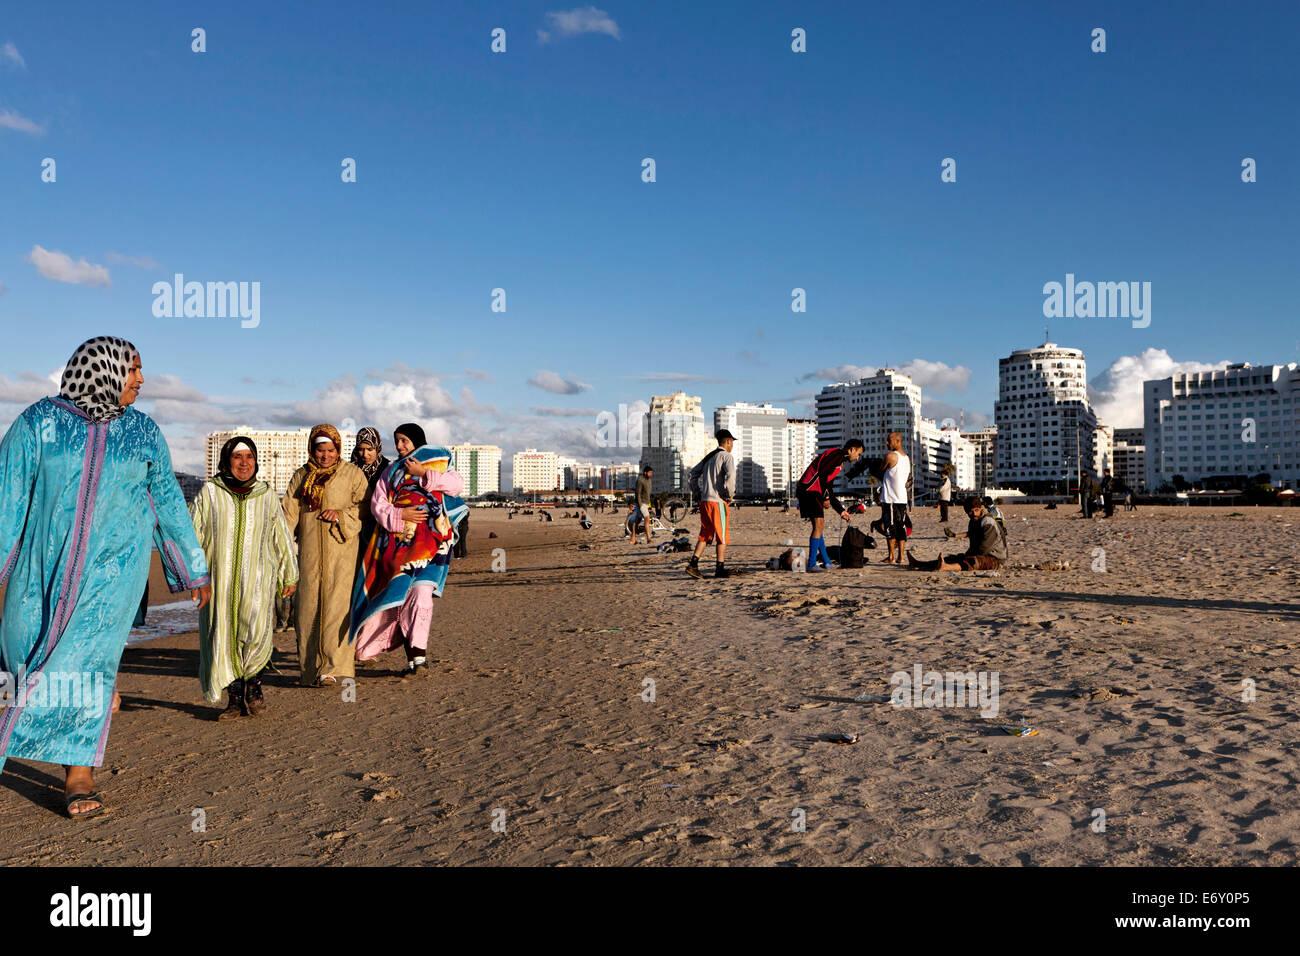 Moroccan women walking along the shore, Tangiers, Morocco Stock Photo